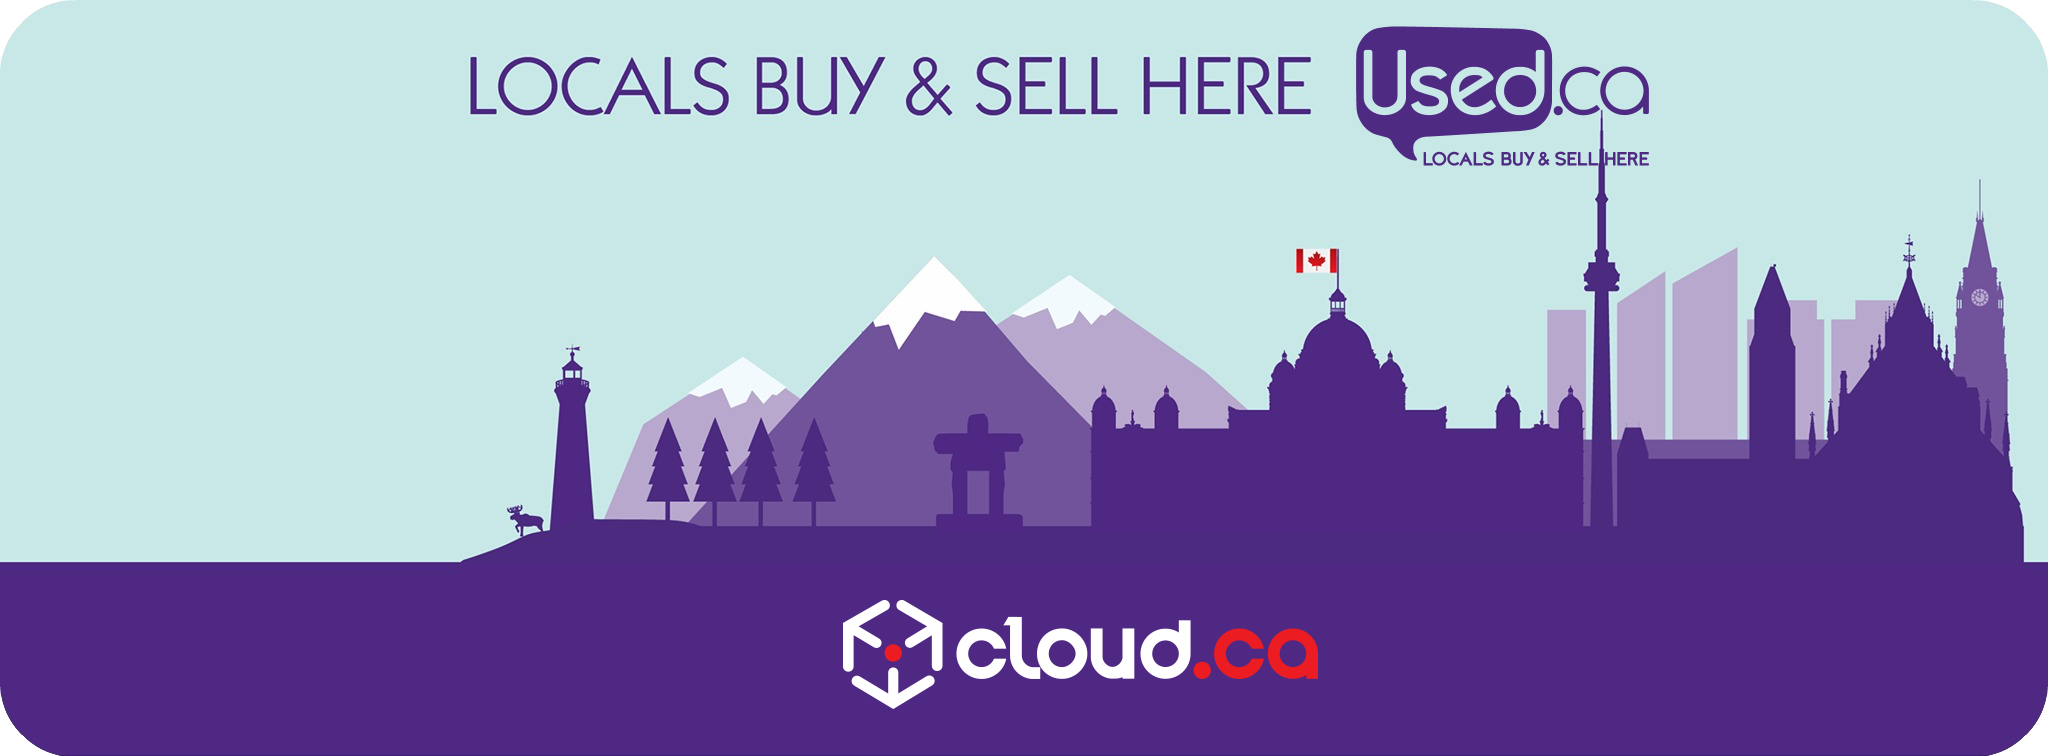 Used.ca cloud.ca skyline logos 2.png